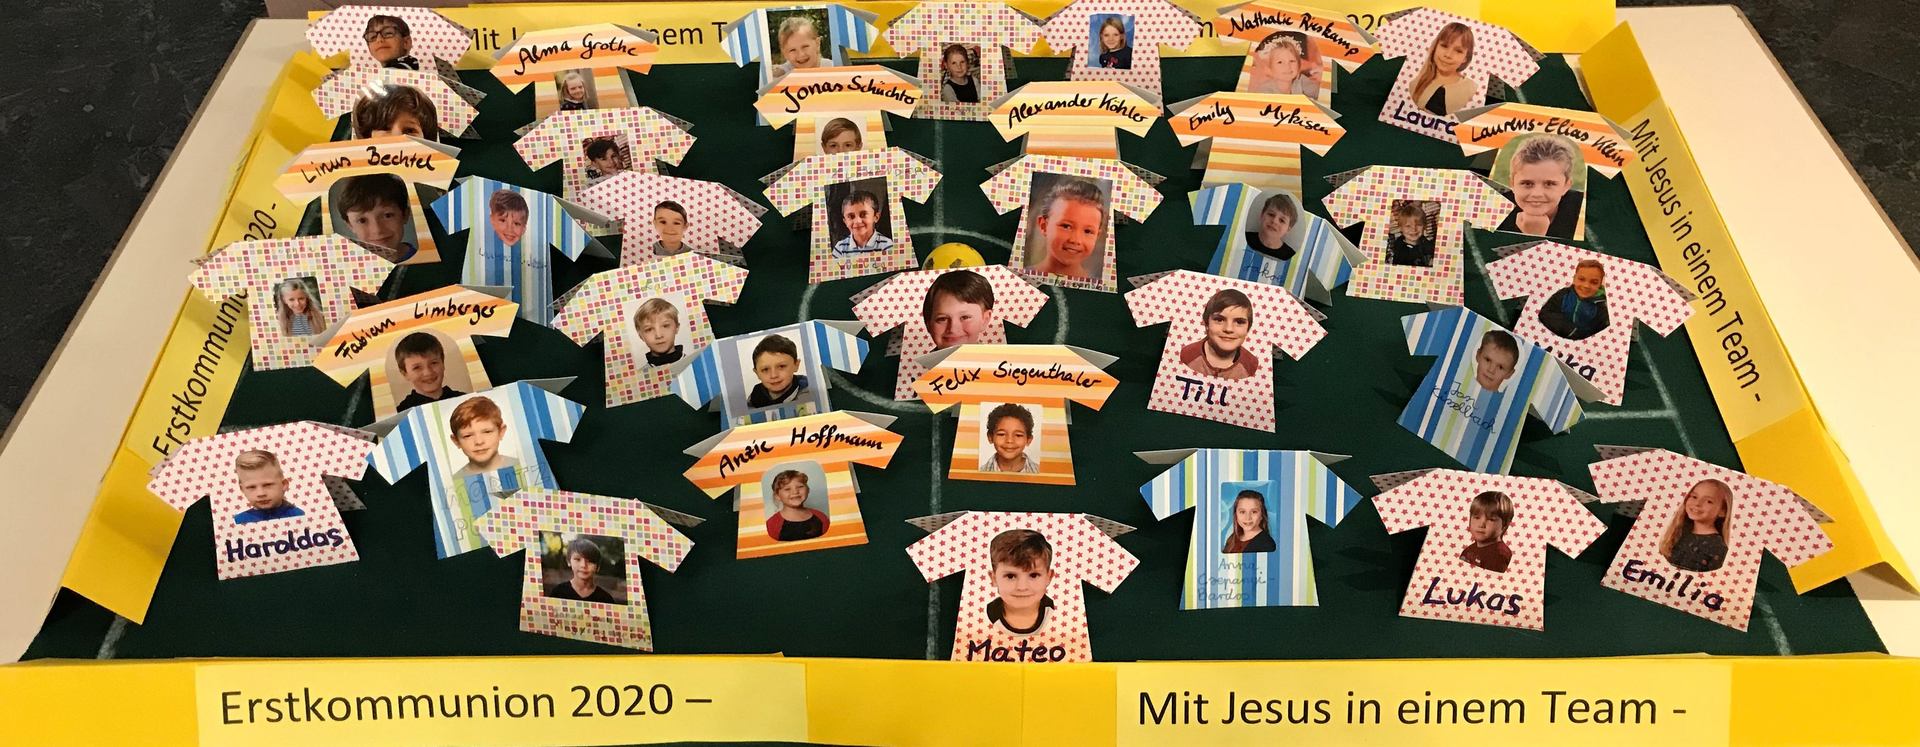 In einem Team mit Jesus - EK-Kinder 2020 (c) Brigitta Gebauer 2020